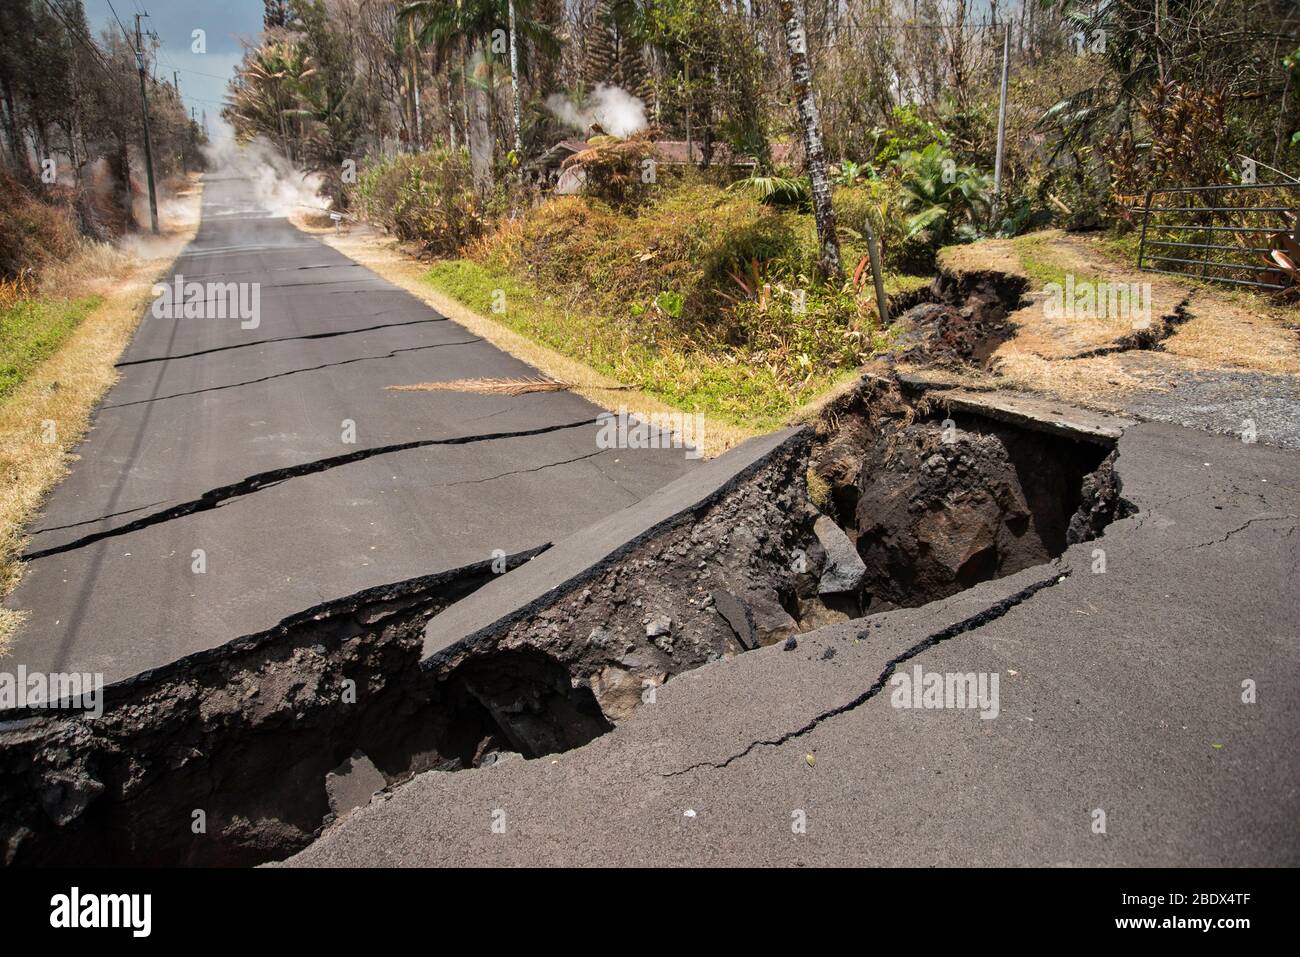 Straße, die von einem von mehreren Erdbeben während der Vulkanausbruch Kīlauea betroffen, was einen 80-Fuß-Drop in den Boden. Beachten Sie die Gase, die von den Rissen im Asphalt, weiter die Straße hinunter. Bild aufgenommen am 19. Mai 2018. Stockfoto